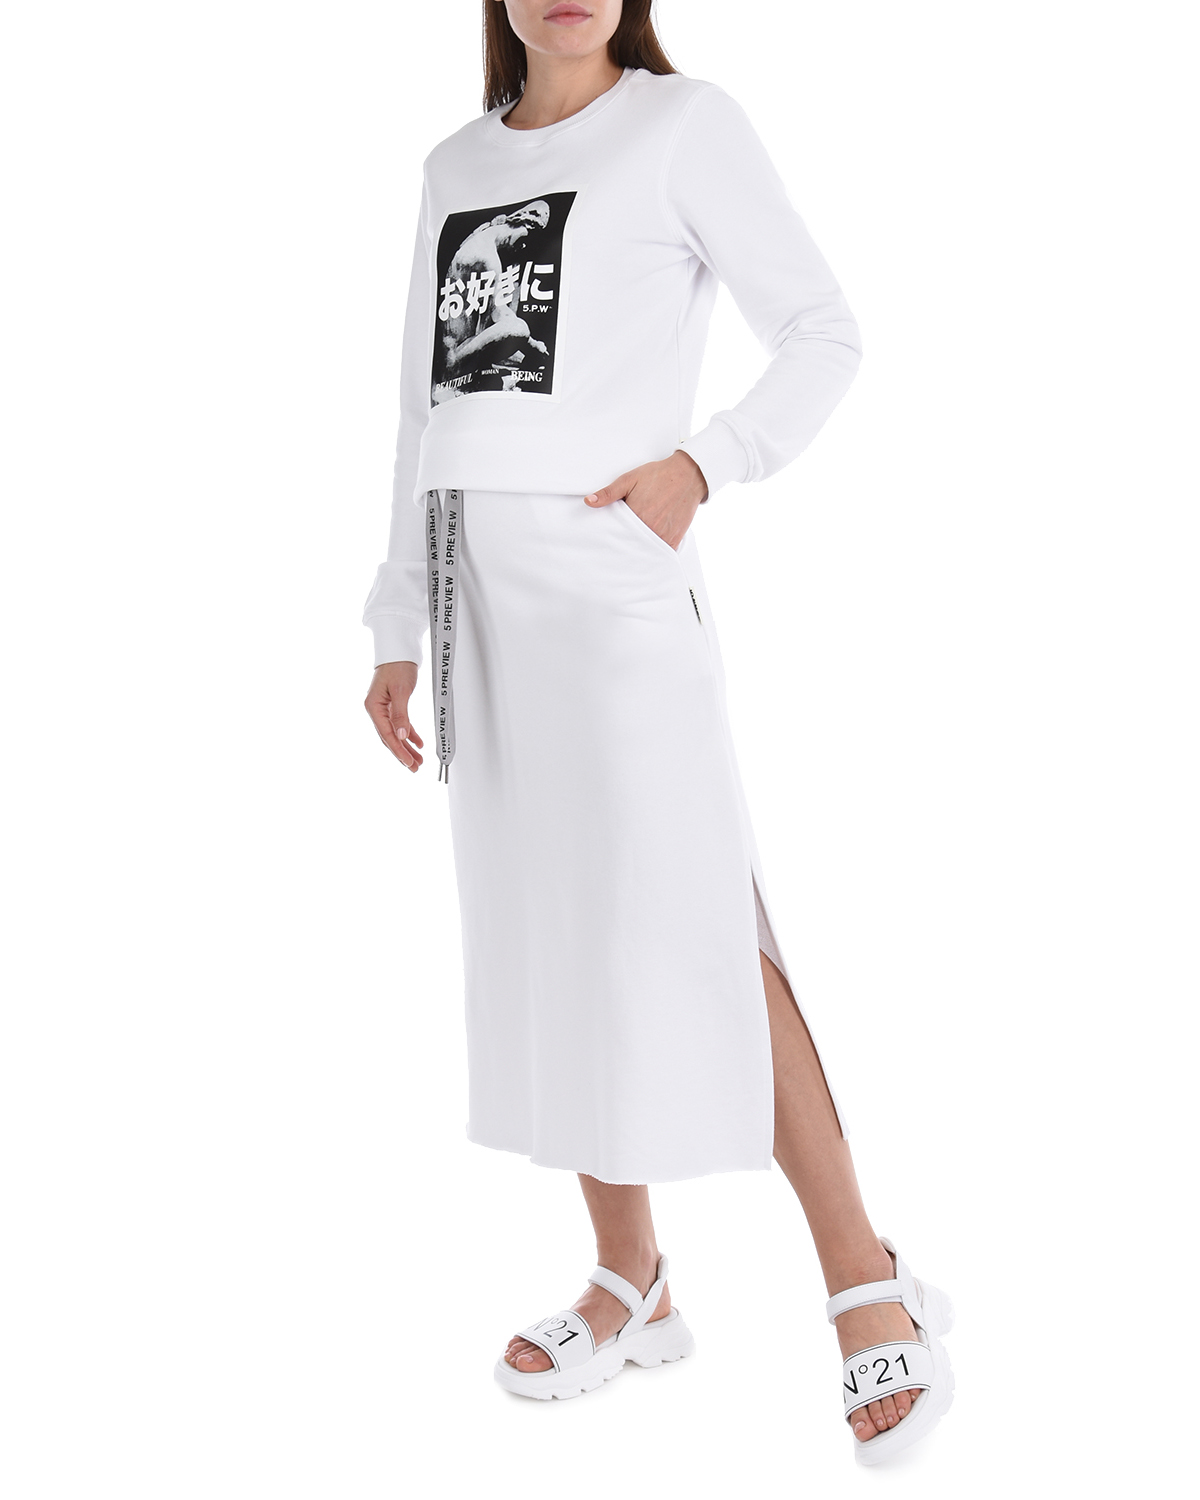 Белая юбка в спортивном стиле 5 Preview, размер 40, цвет белый - фото 4